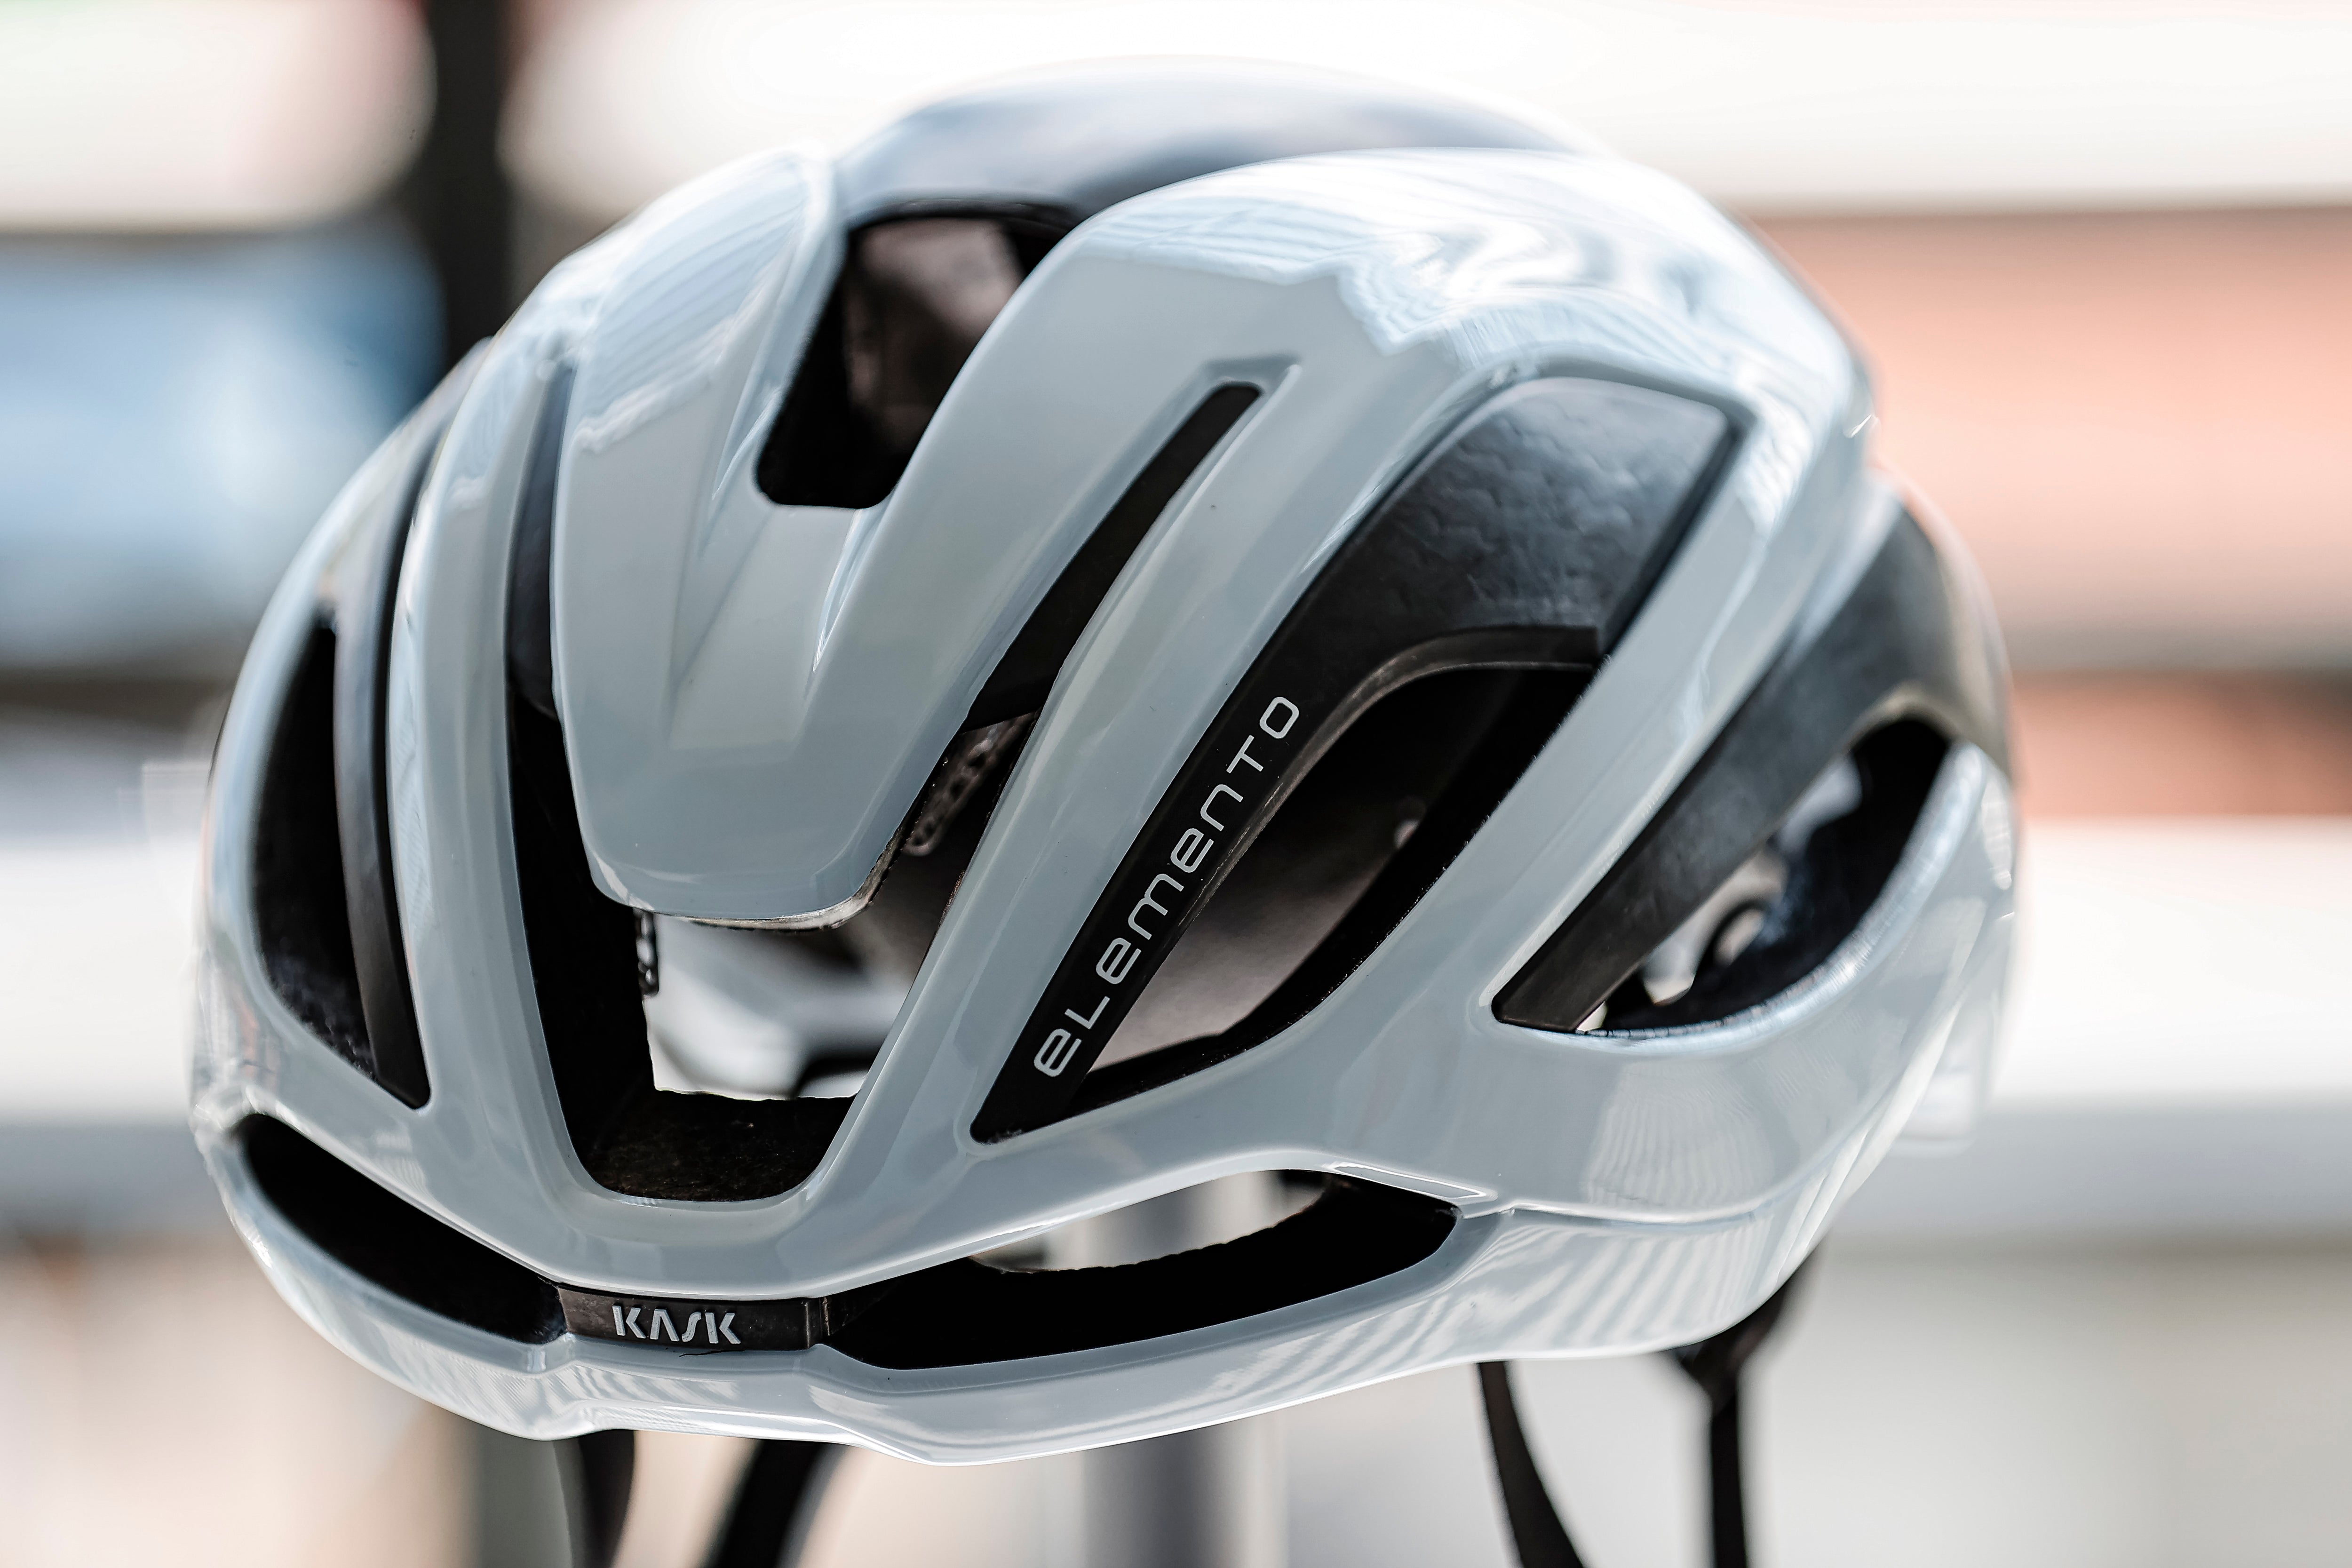 New Kask Elemento - helmet compromise' – Rouleur